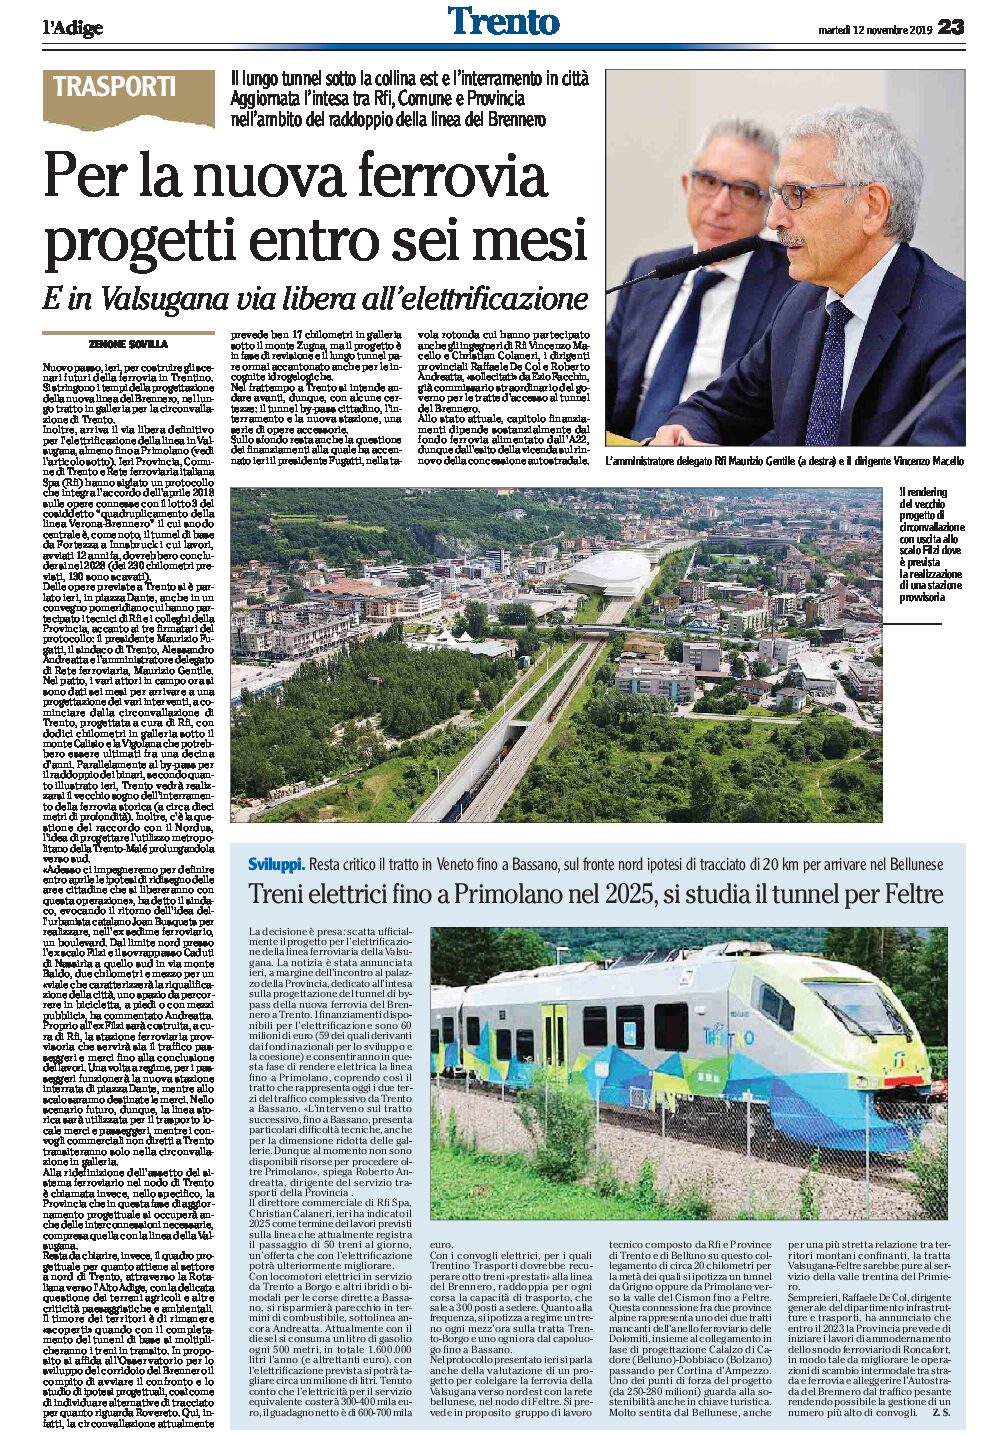 Trentino, trasporti: per la nuova ferrovia progetti entro 6 mesi. In Valsugana ok all’elettrificazione